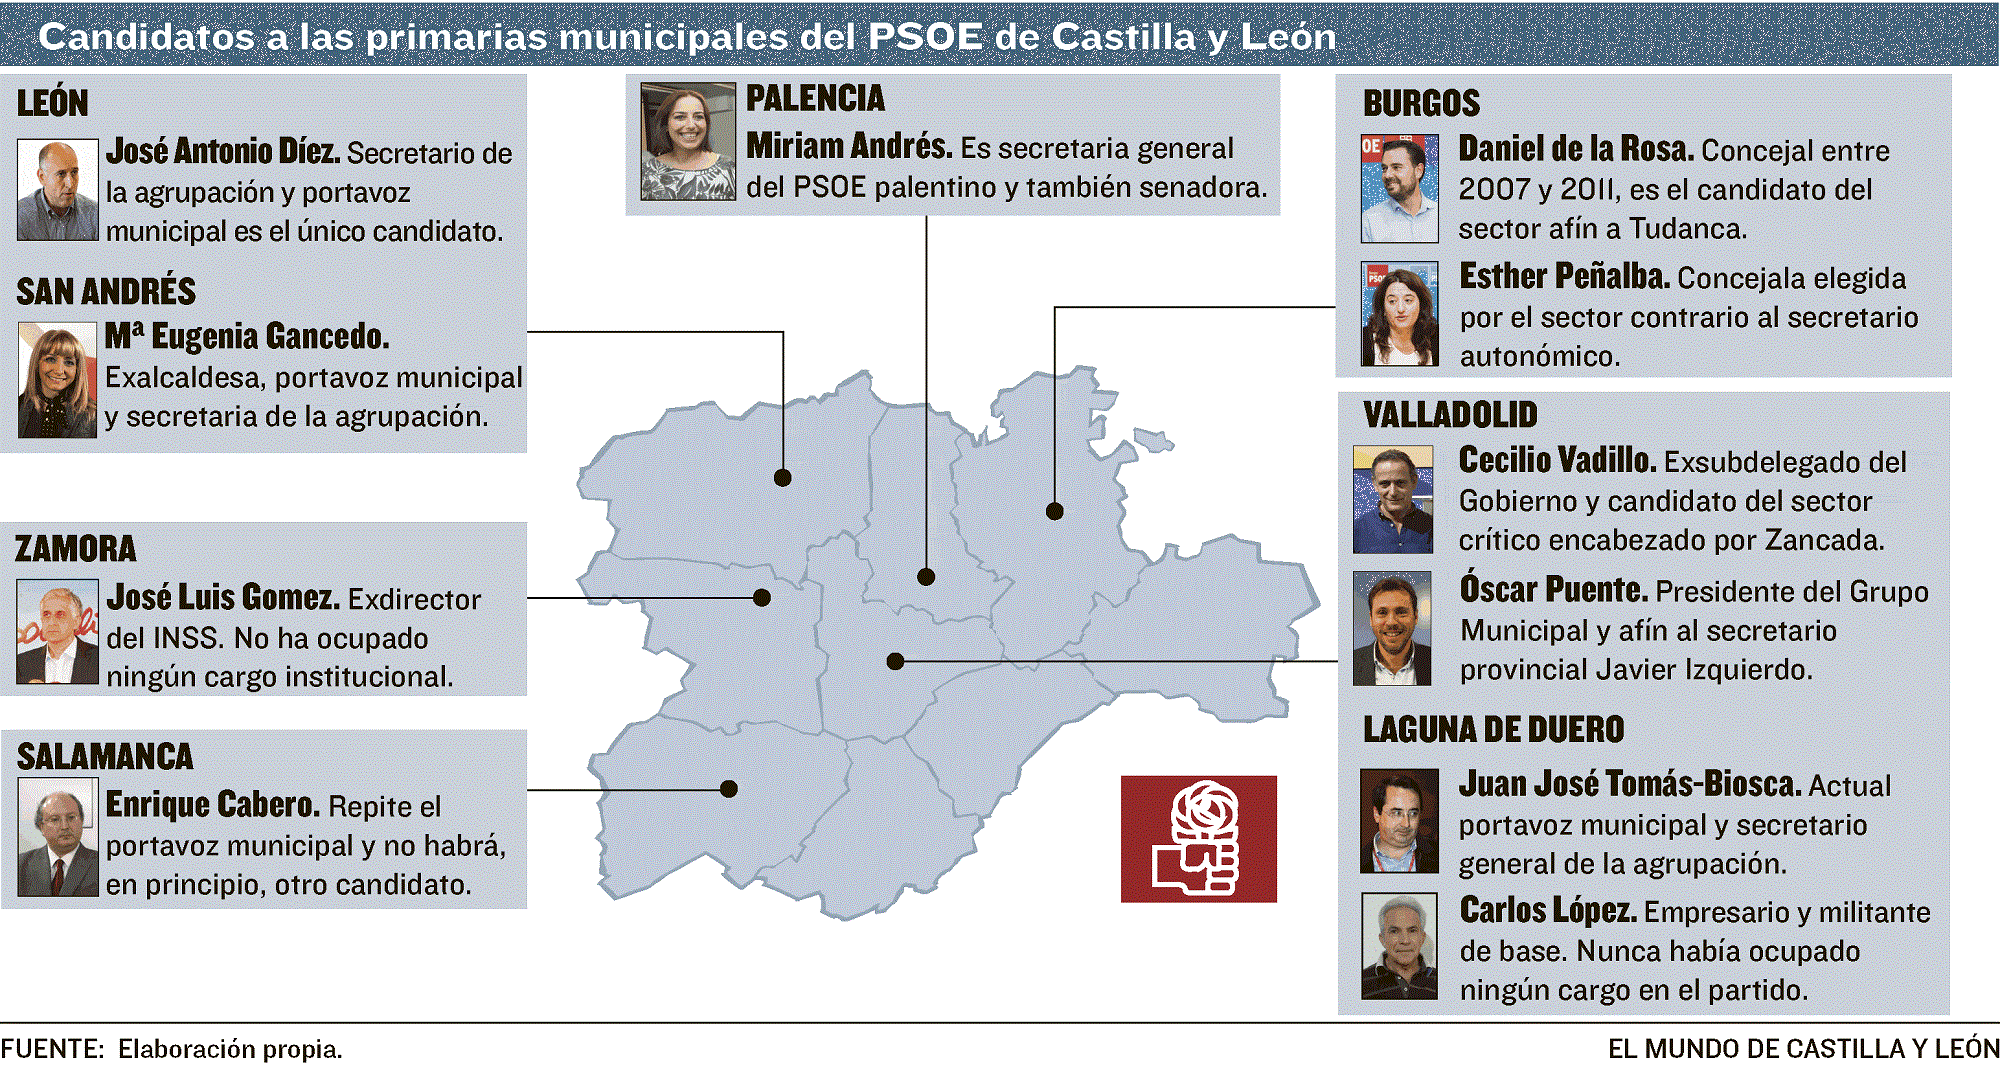 Candidatos a las primarias municipales del PSOE en Castilla y León-Elaboración propia El Mundo Diario de Castilla y León